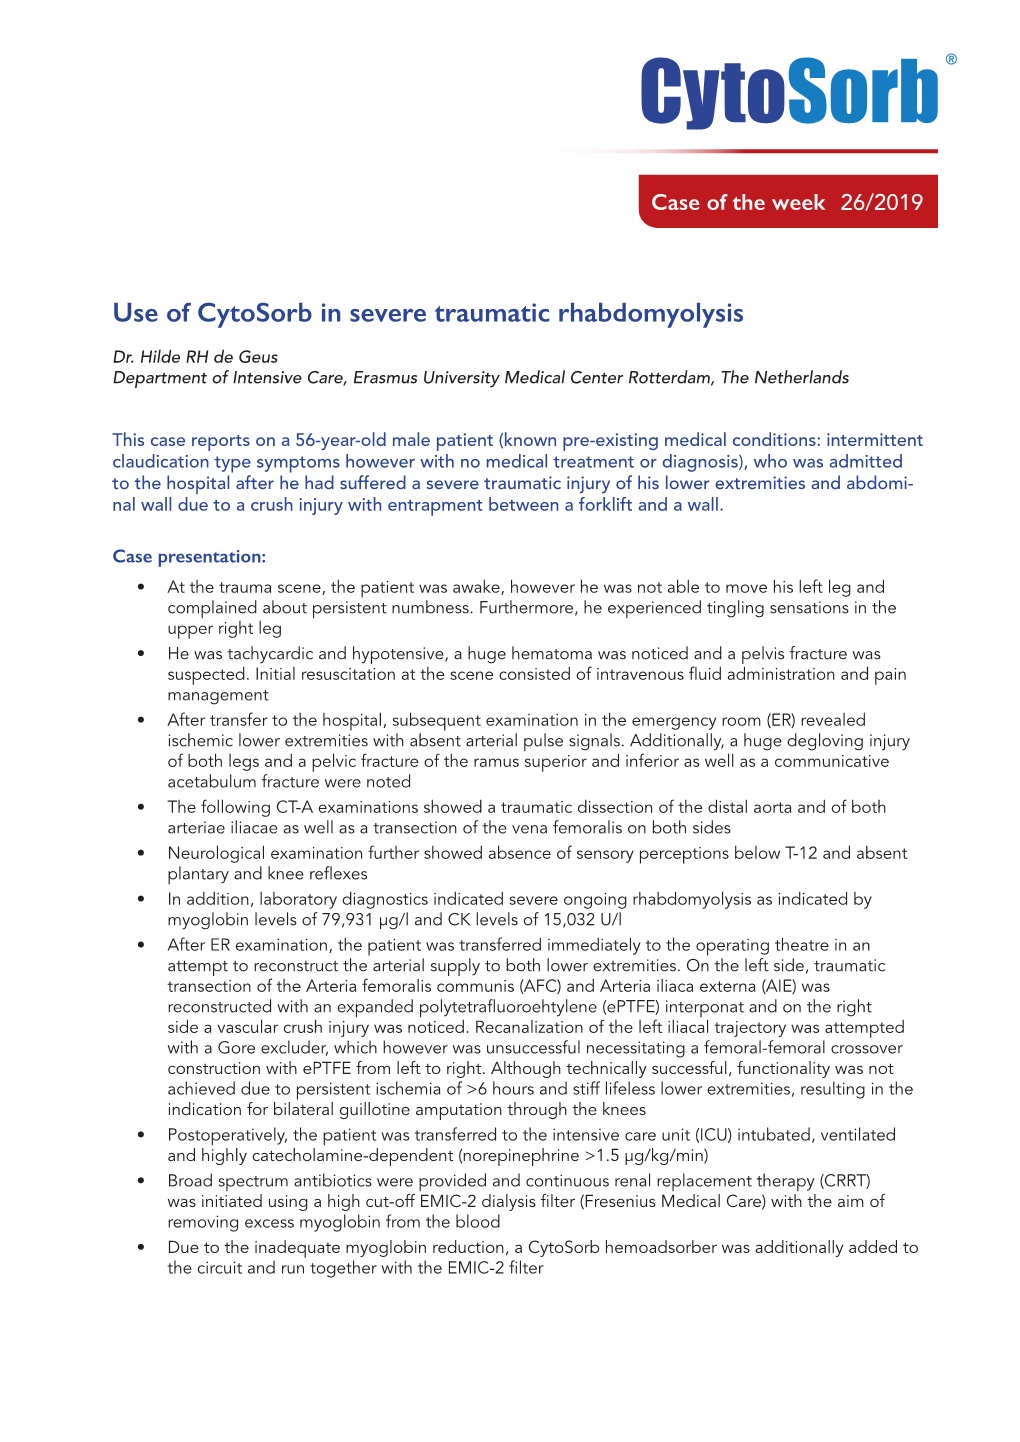 Use of Cytosorb in Severe Traumatic Rhabdomyolysis